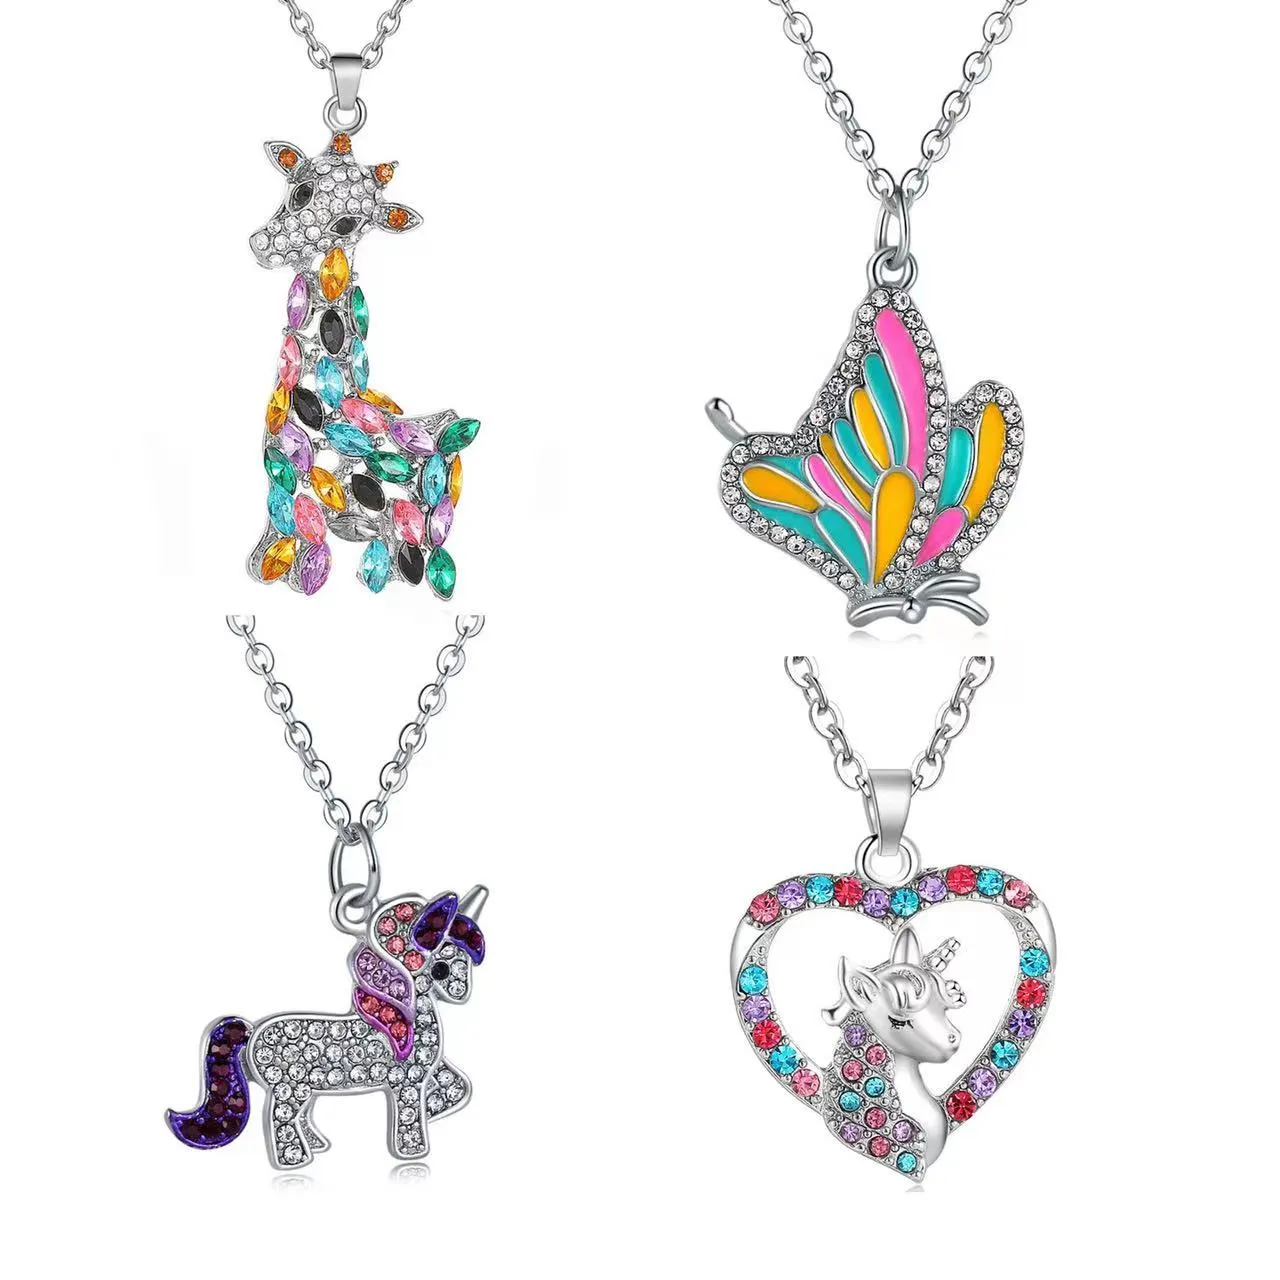 4 sätter kreativ färg unicorn halsband fjäril giraff hängsmycke passform för barn tecknade djur smycken tillbehör